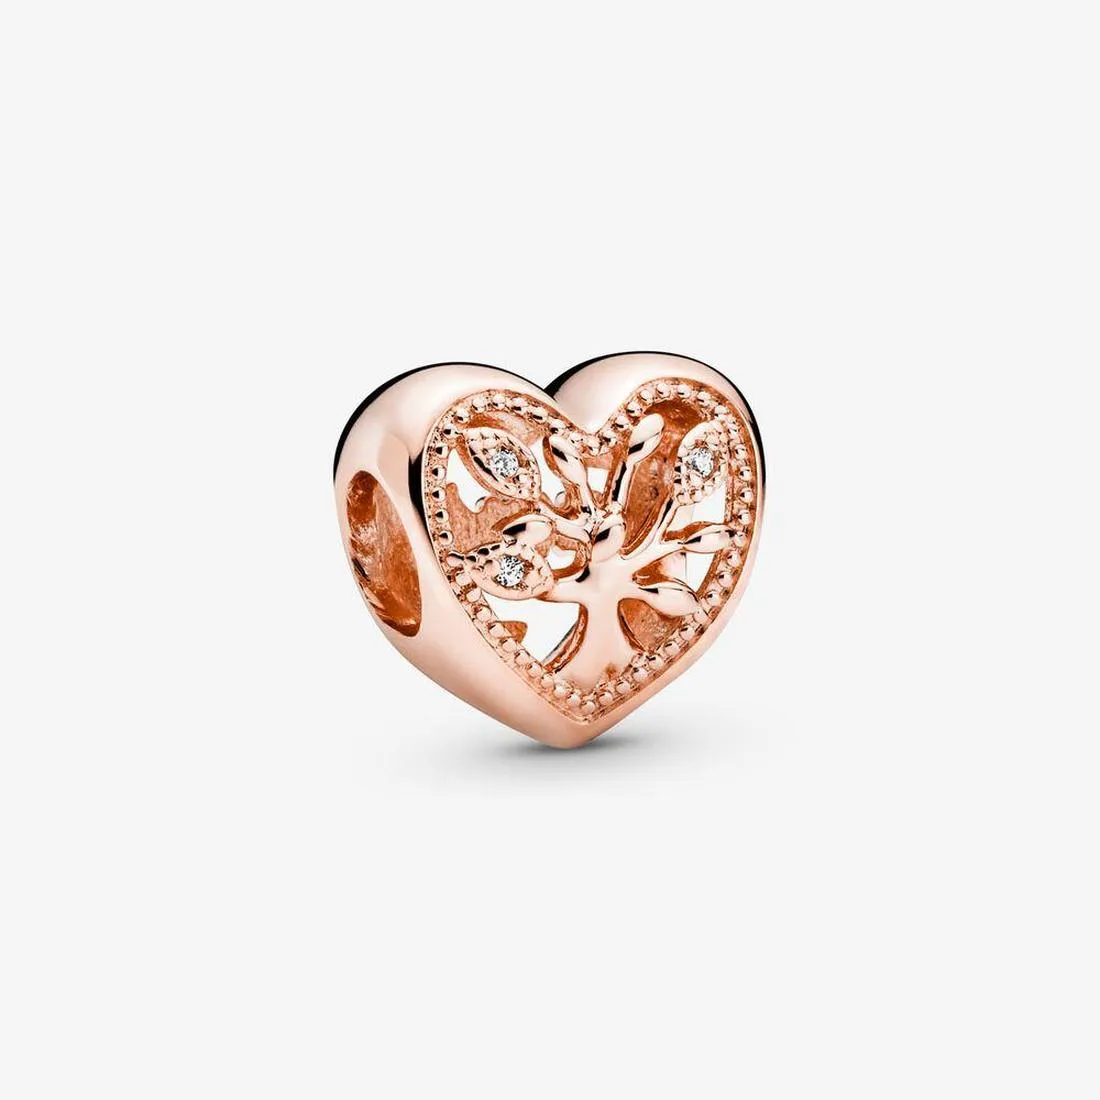 Autentico braccialetti di perline in argento 925 traforato albero genealogico cuore fascino perline charms adatto per bracciali gioielli stile Pandora europeo Murano